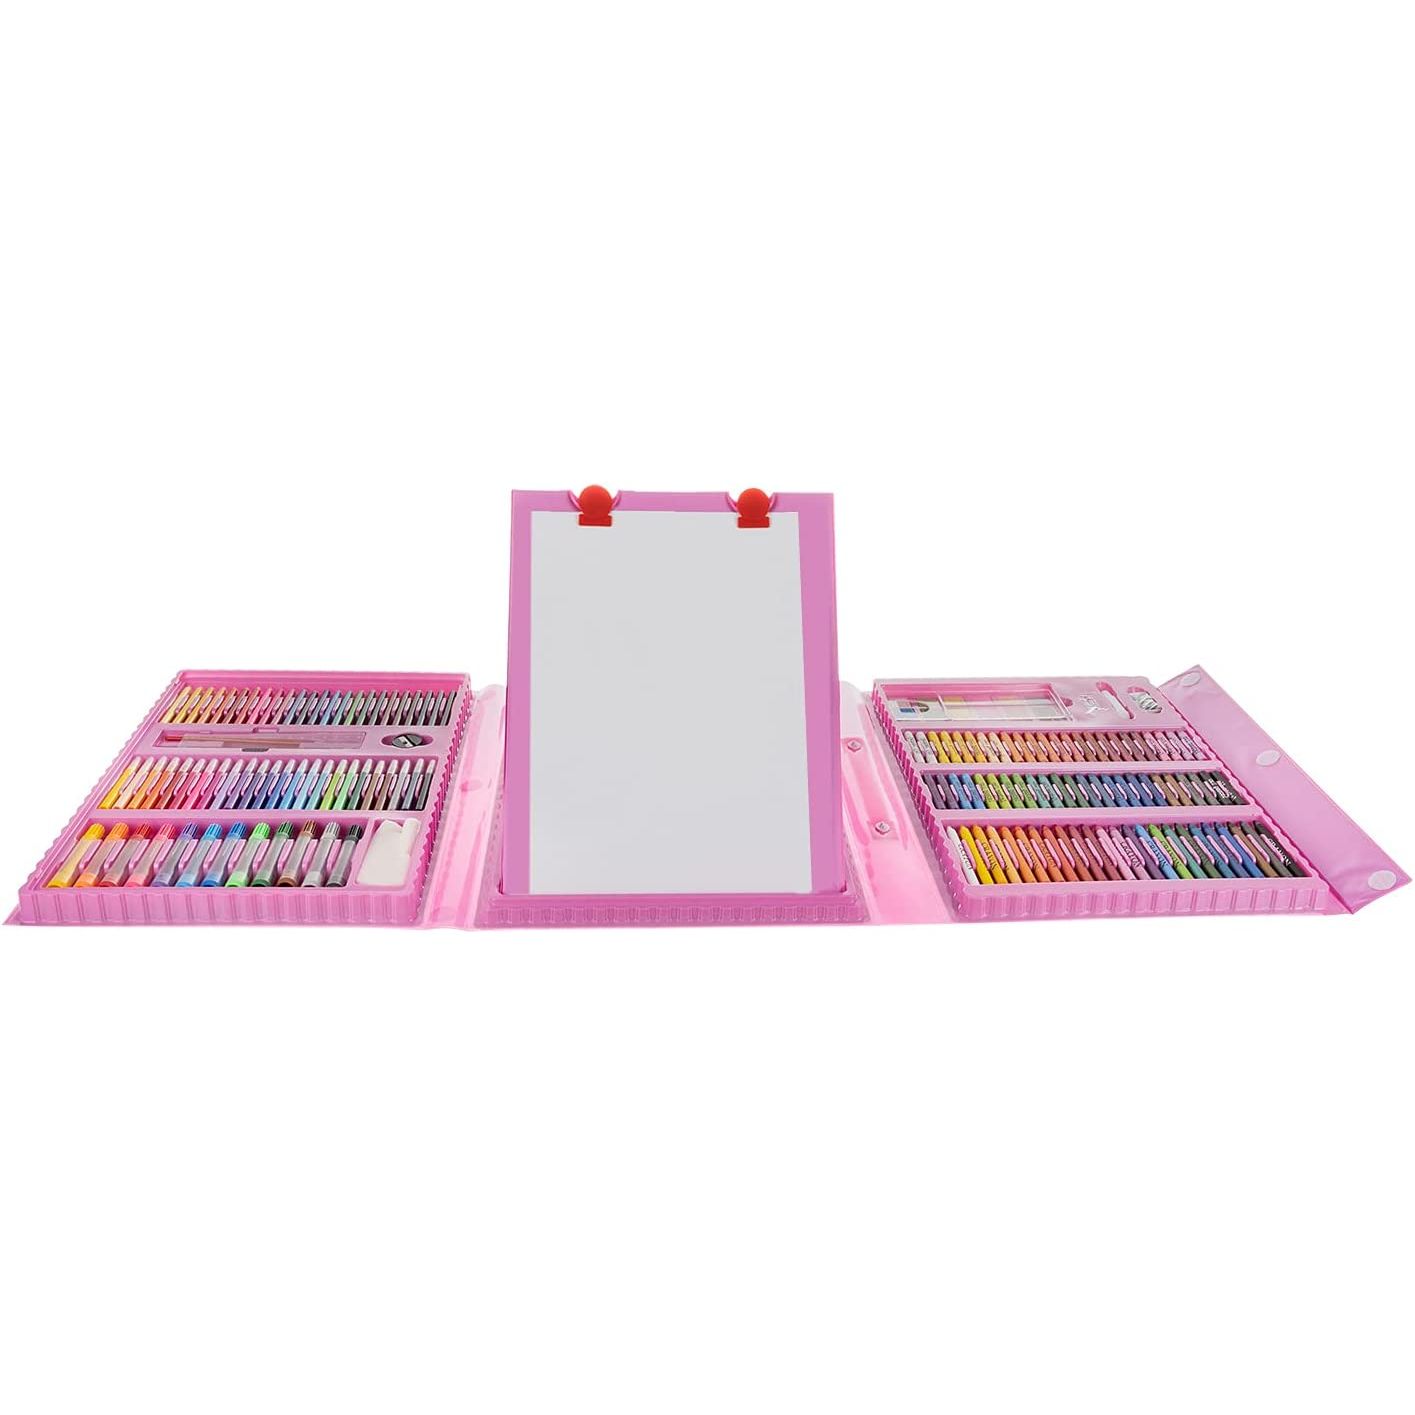 Kit de pintura y dibujo XXL con maletín de transporte rosa - 208